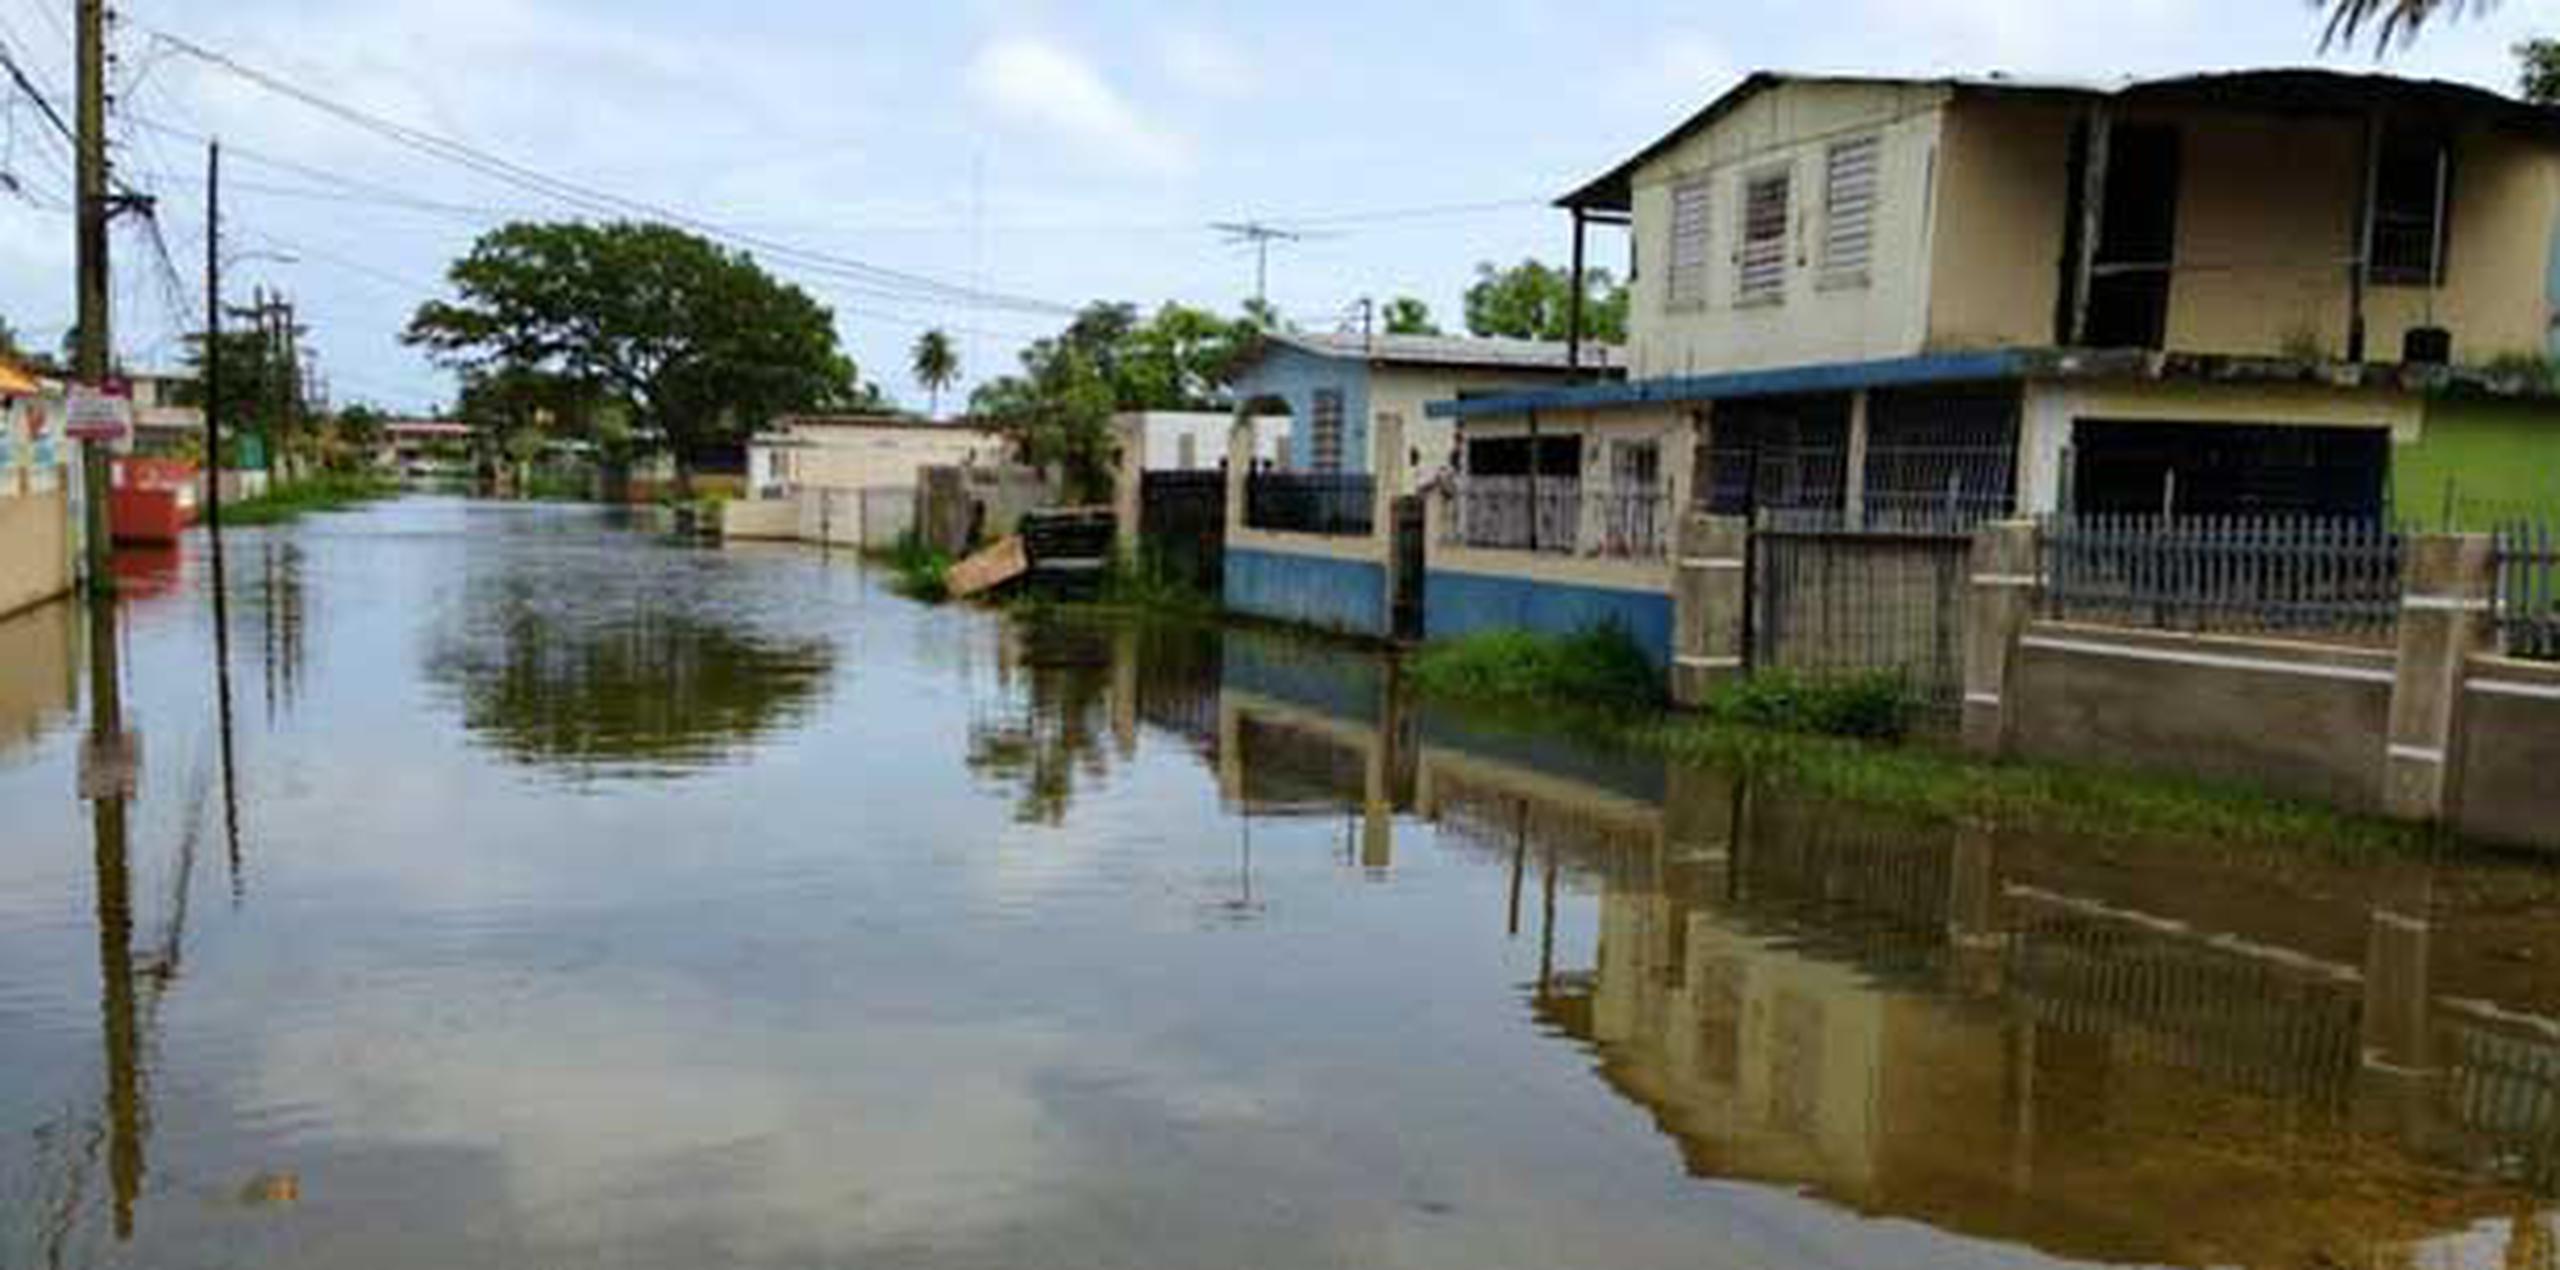 La calle 2 en Los Naranjos aún permanece sumergida en agua luego de las fuertes lluvias que se registraron el pasado mes de mayo.(Para Primera Hora / Nelson Reyes Faría)